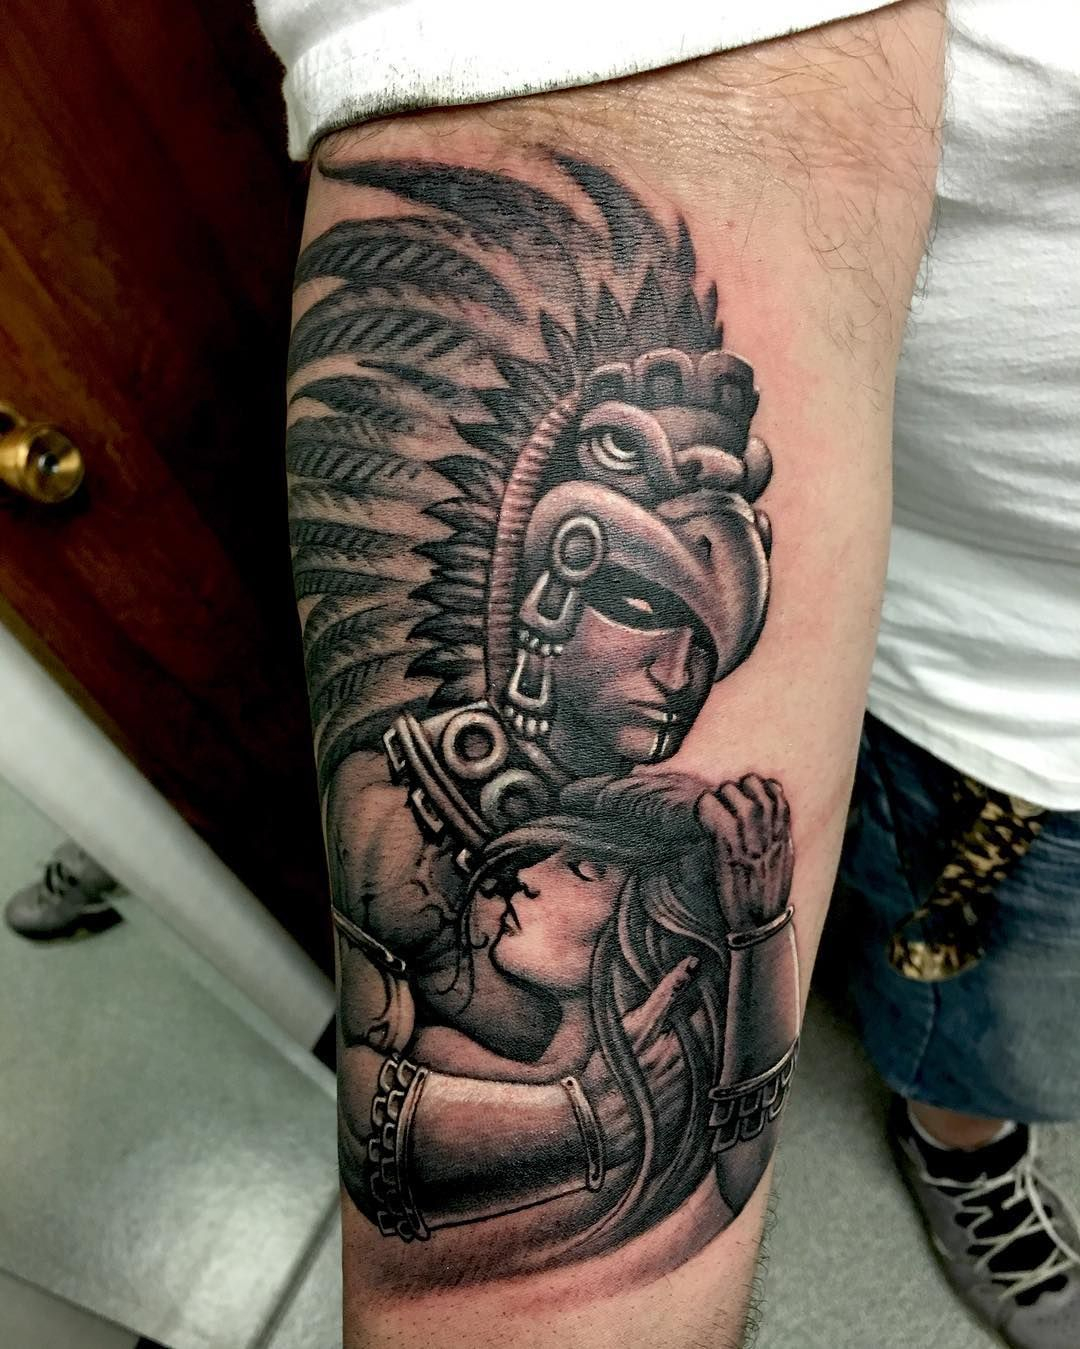 Aztec Arm Tattoo Designs Arm Tattoo Sites